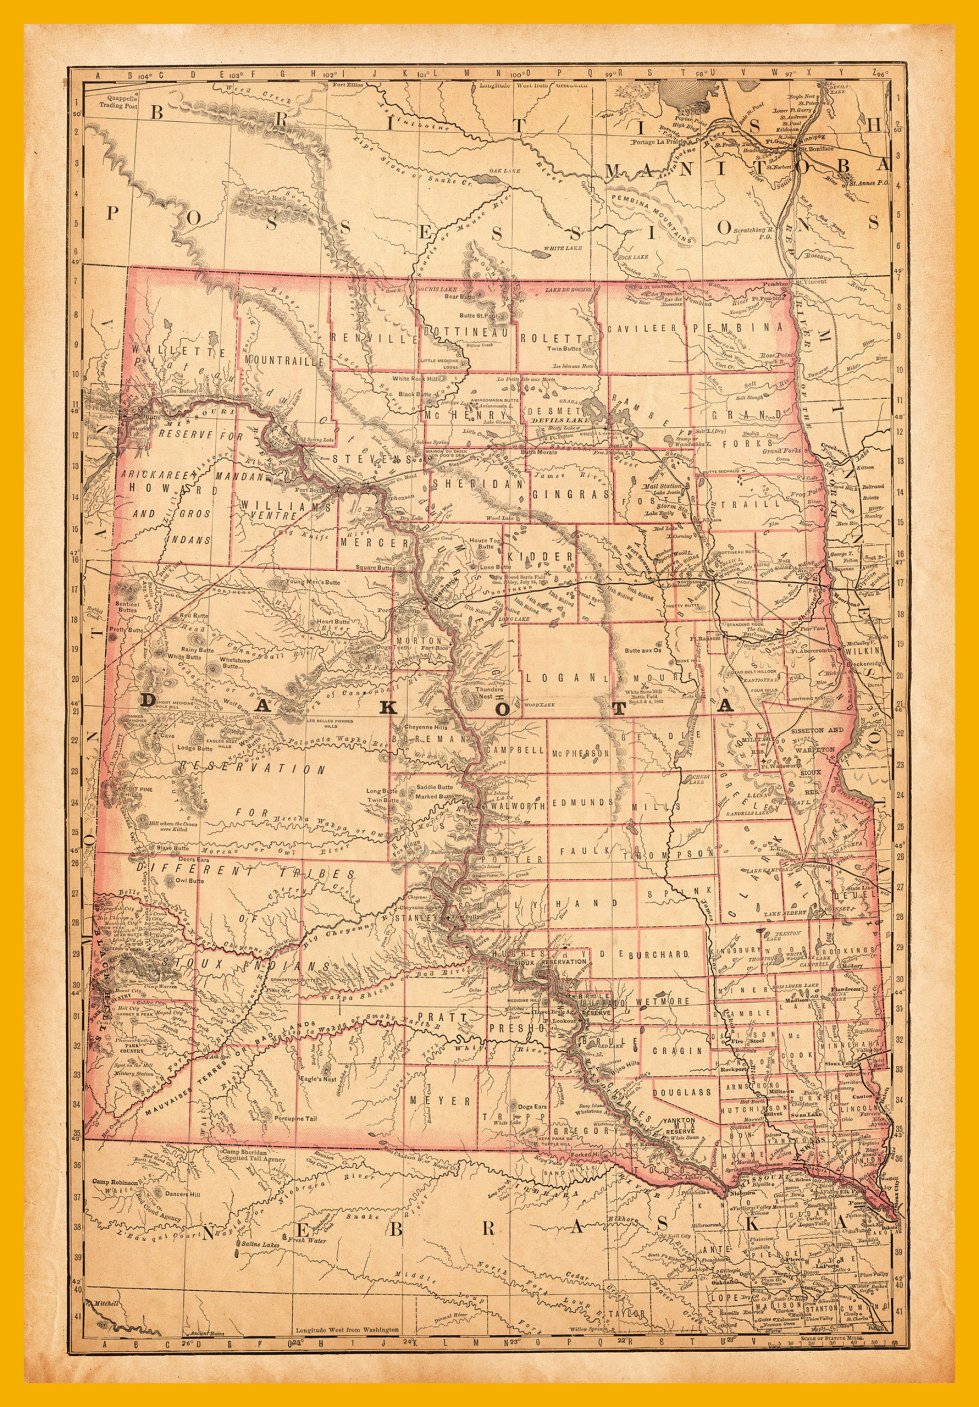 north-dakota-south-dakota-map-1881.jpg